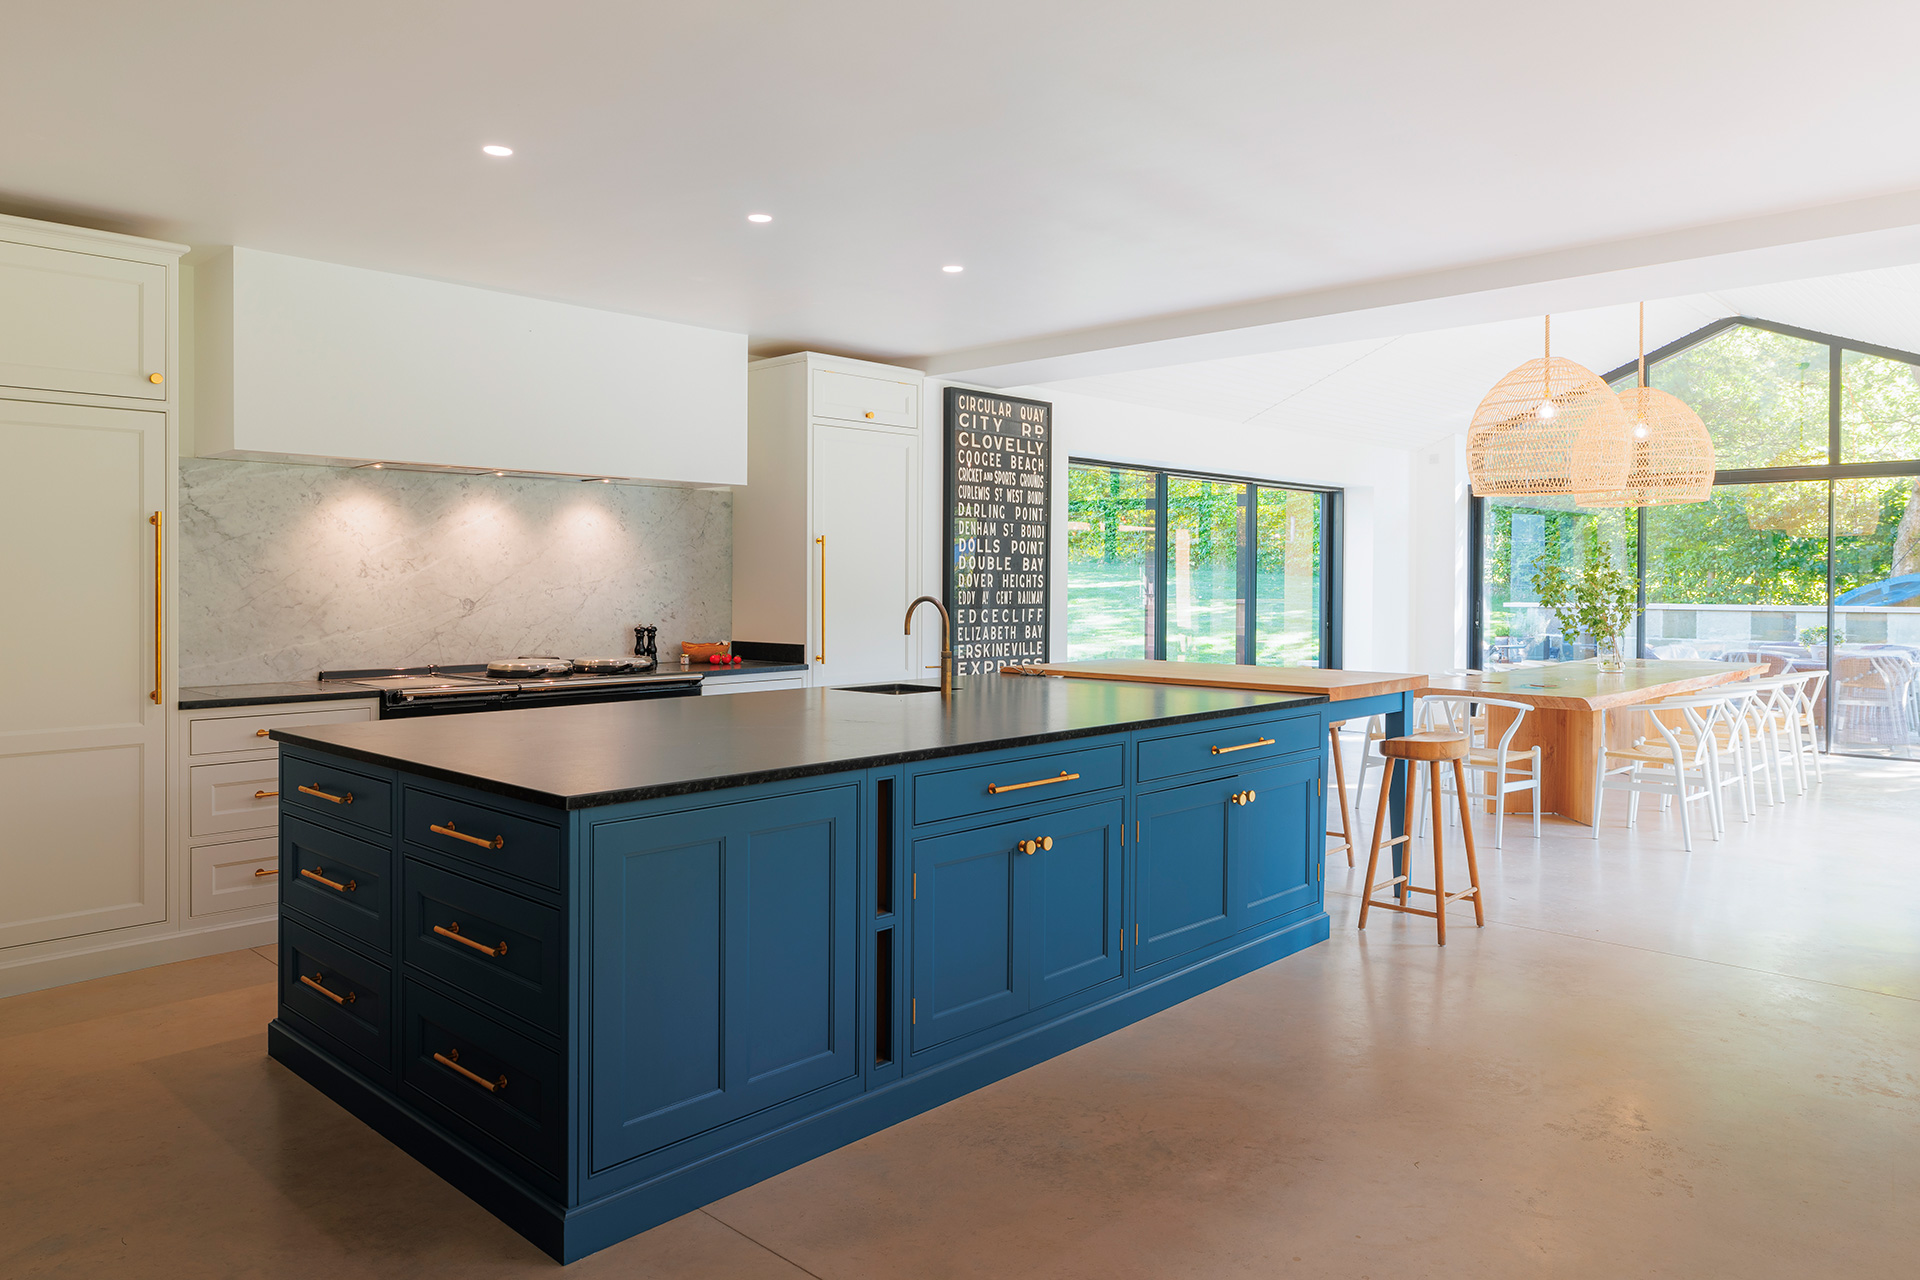 interior large open-plan kitchen diner with blue kitchen island